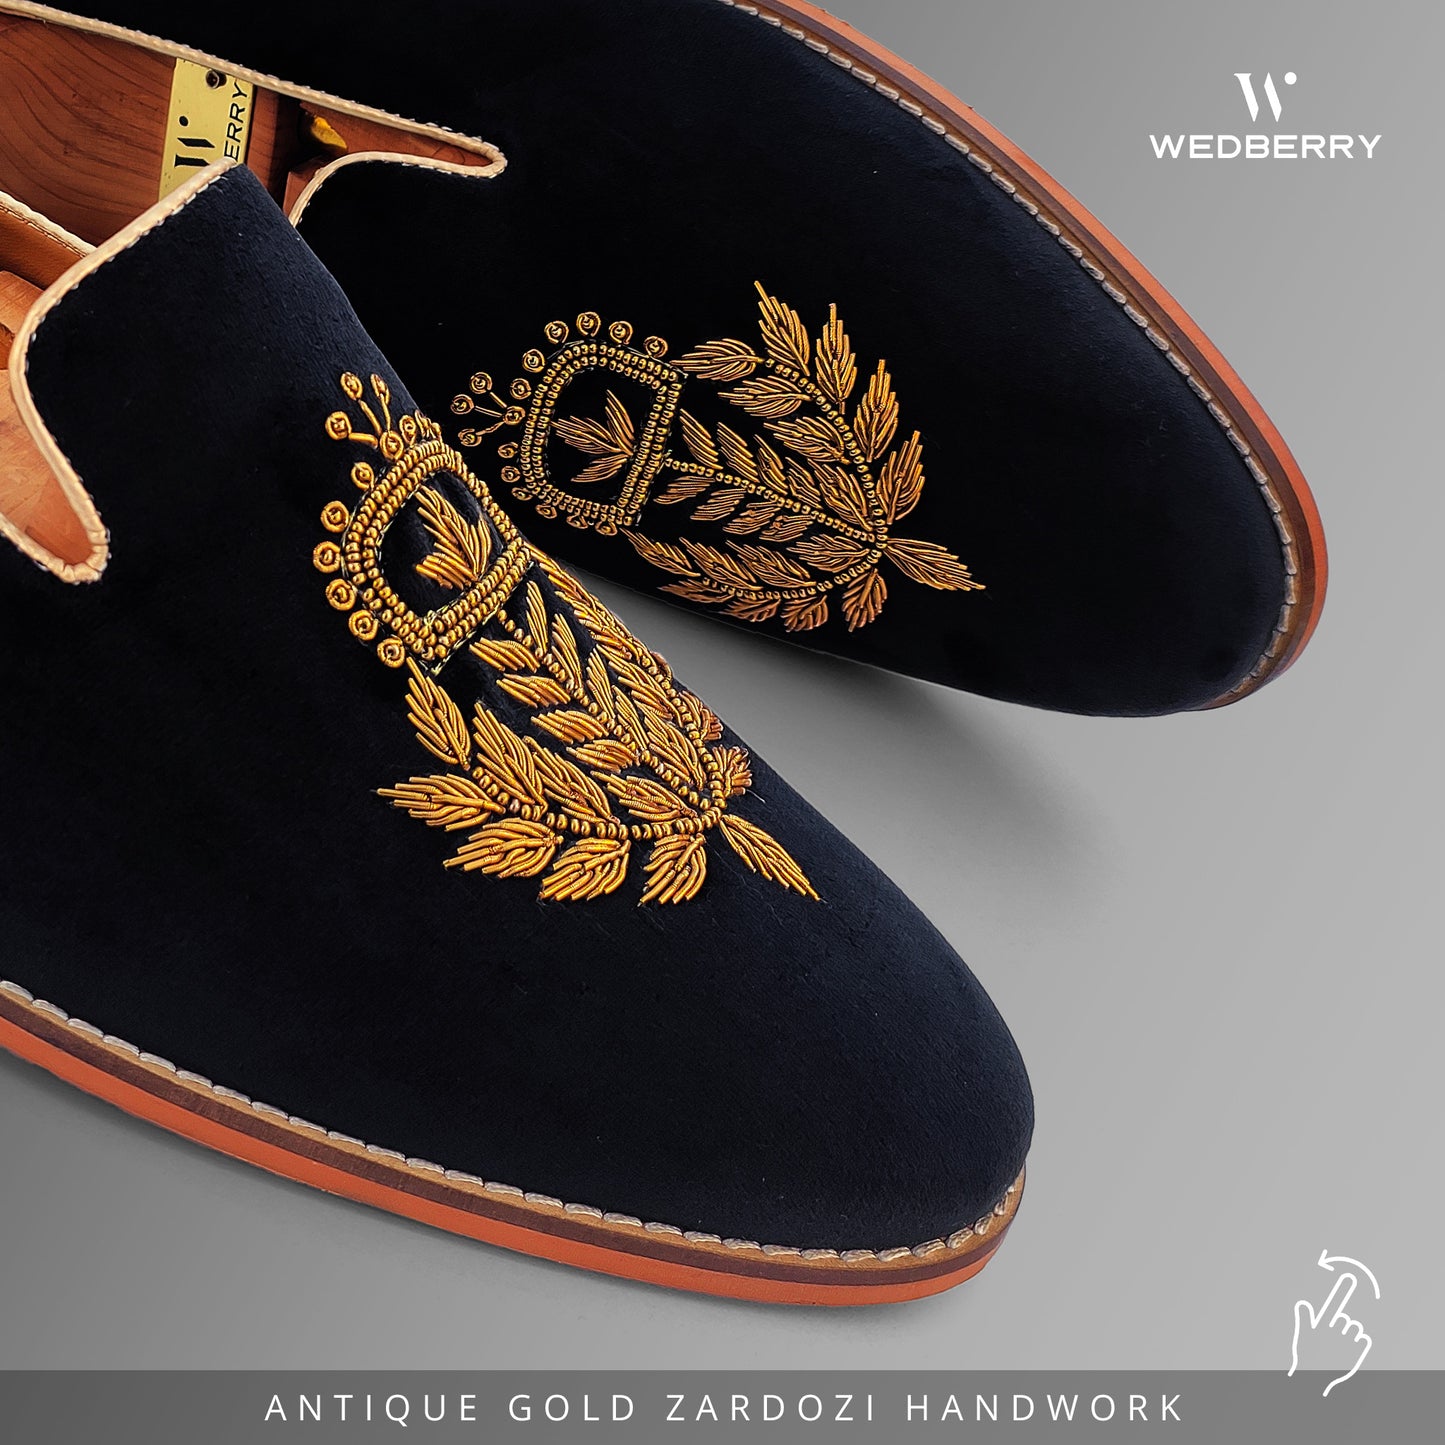 Black Velvet with Antique Gold Zardozi Handwork for Men